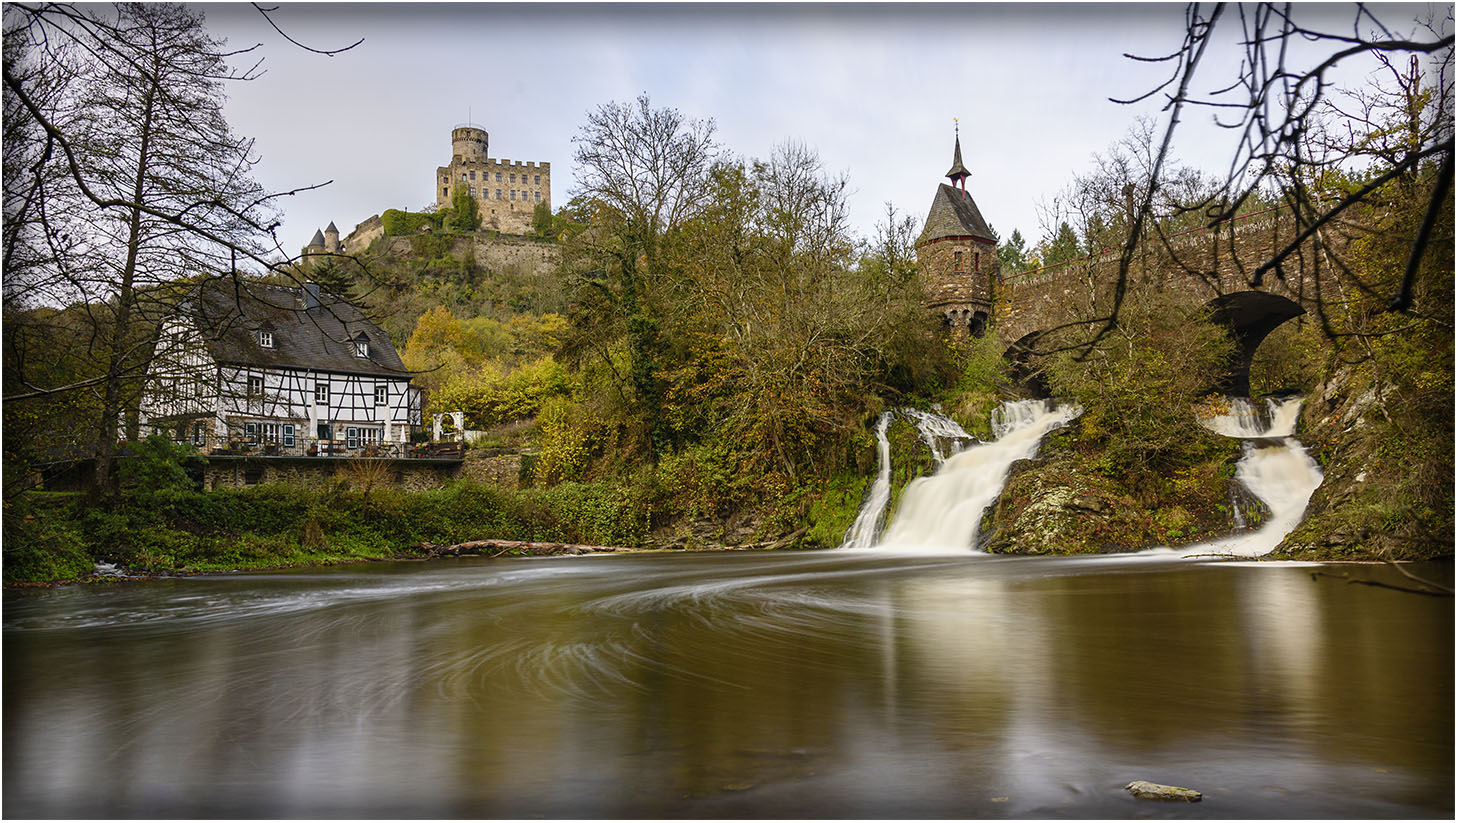 Burg, Mühle und Wasserfall Pyrmont in der Eifel